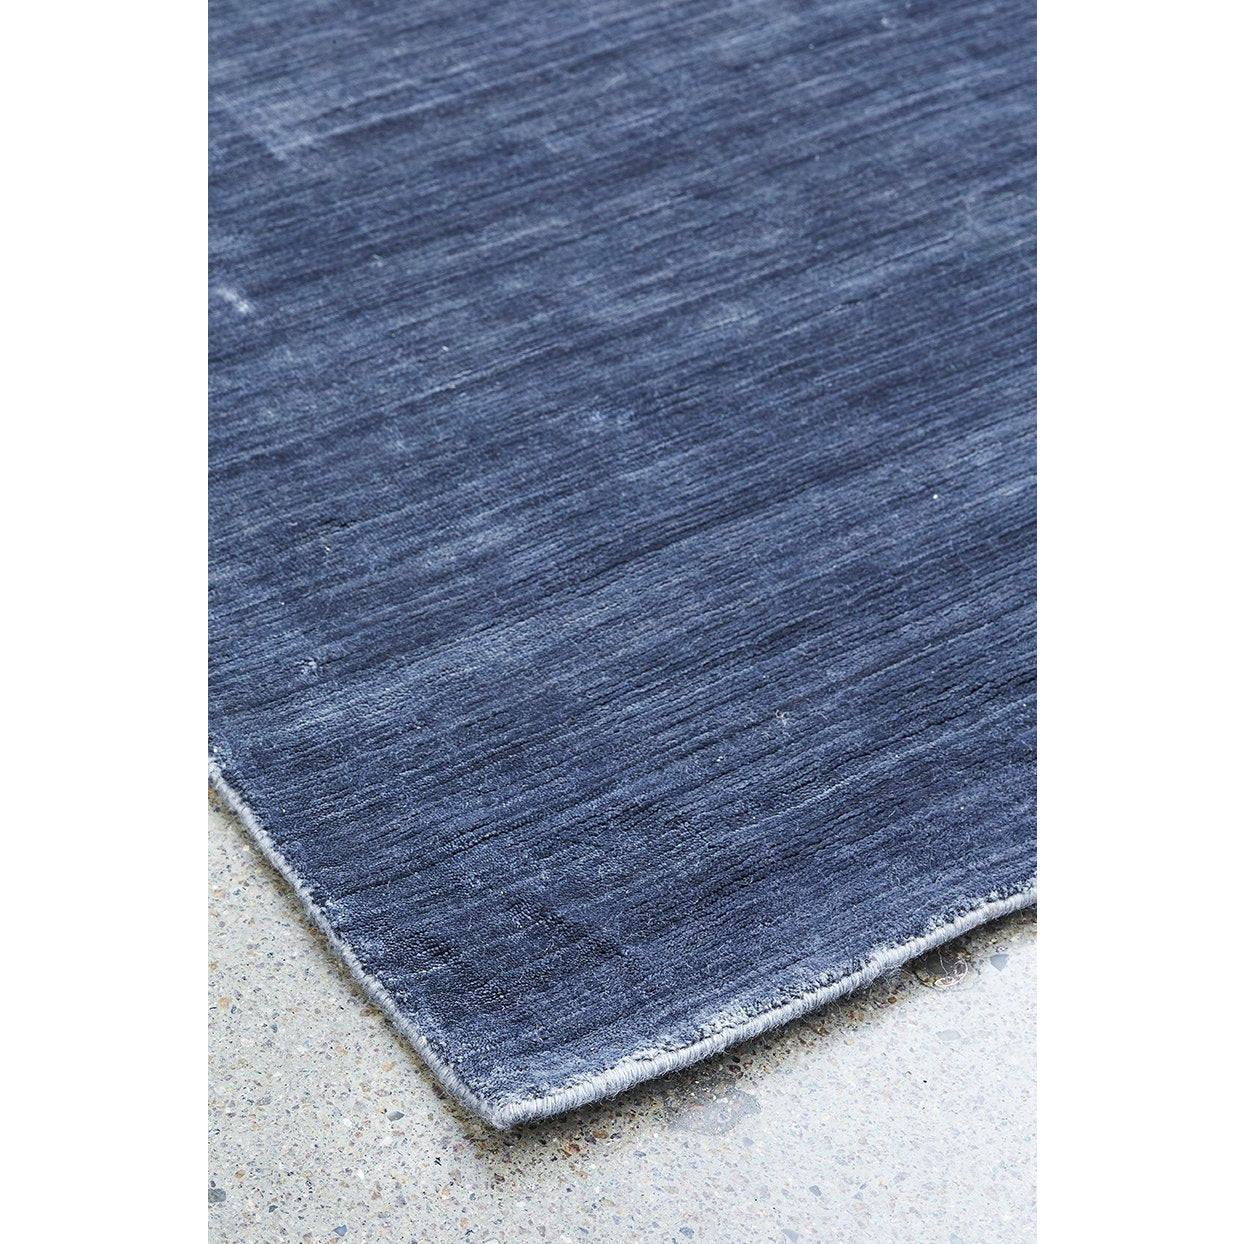 Massimo Bamboe tapijt staal zwart, 200x300 cm